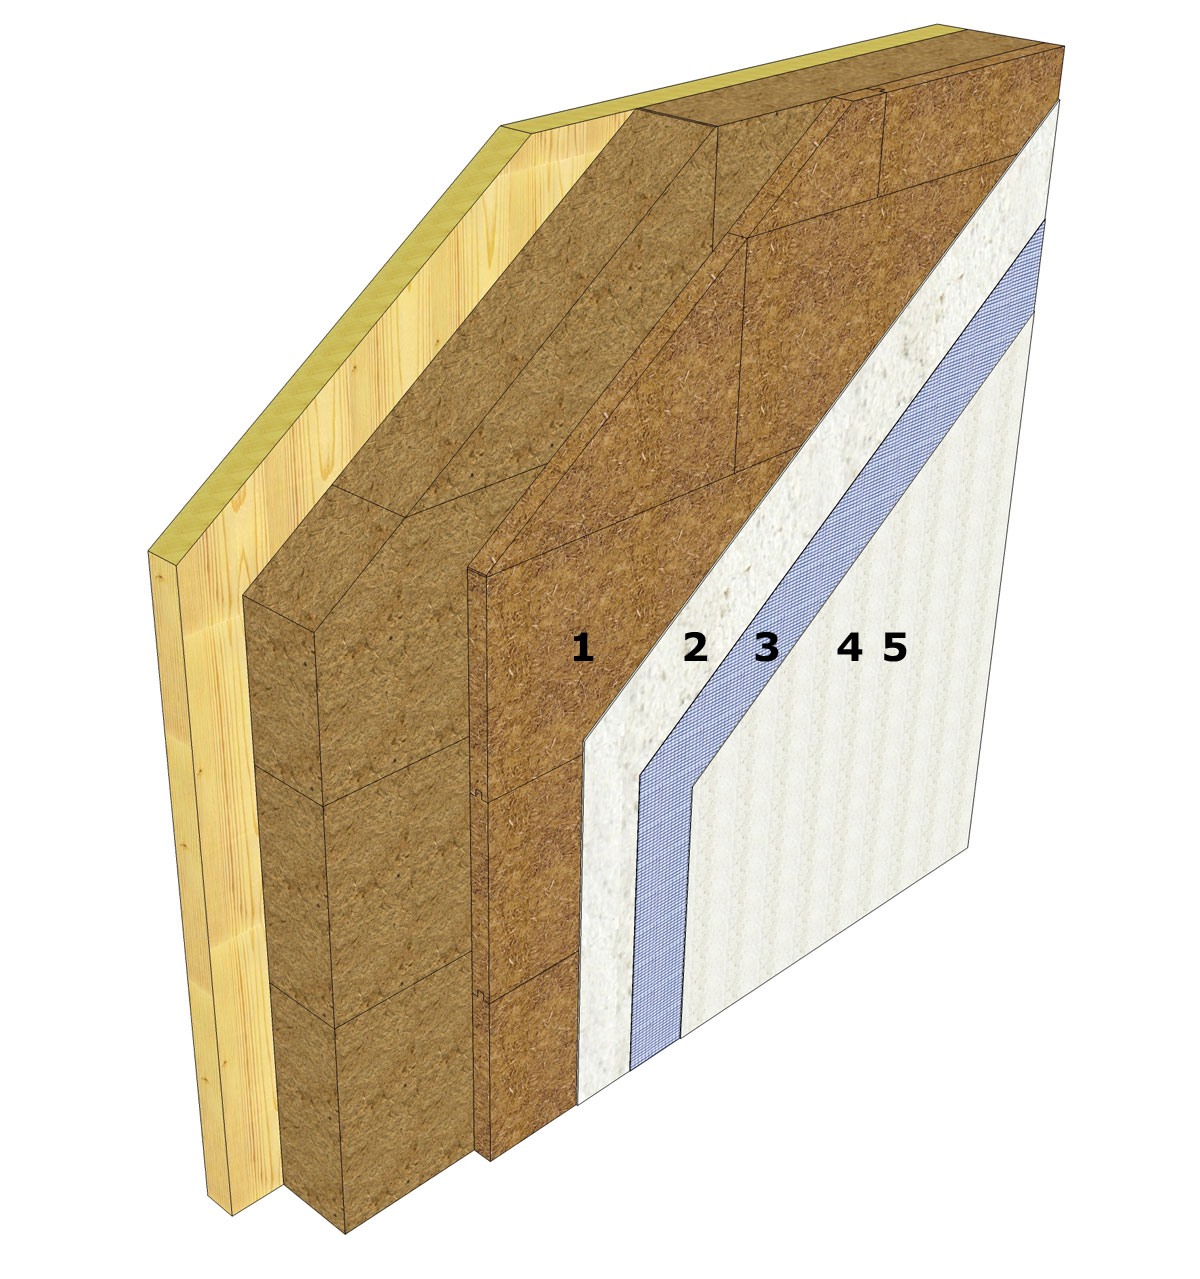 truktúra vrstiev na vonkajších stenách drevostavieb z masívnych drevených panelov priama montáž drevovláknitých izolačných dosiek.